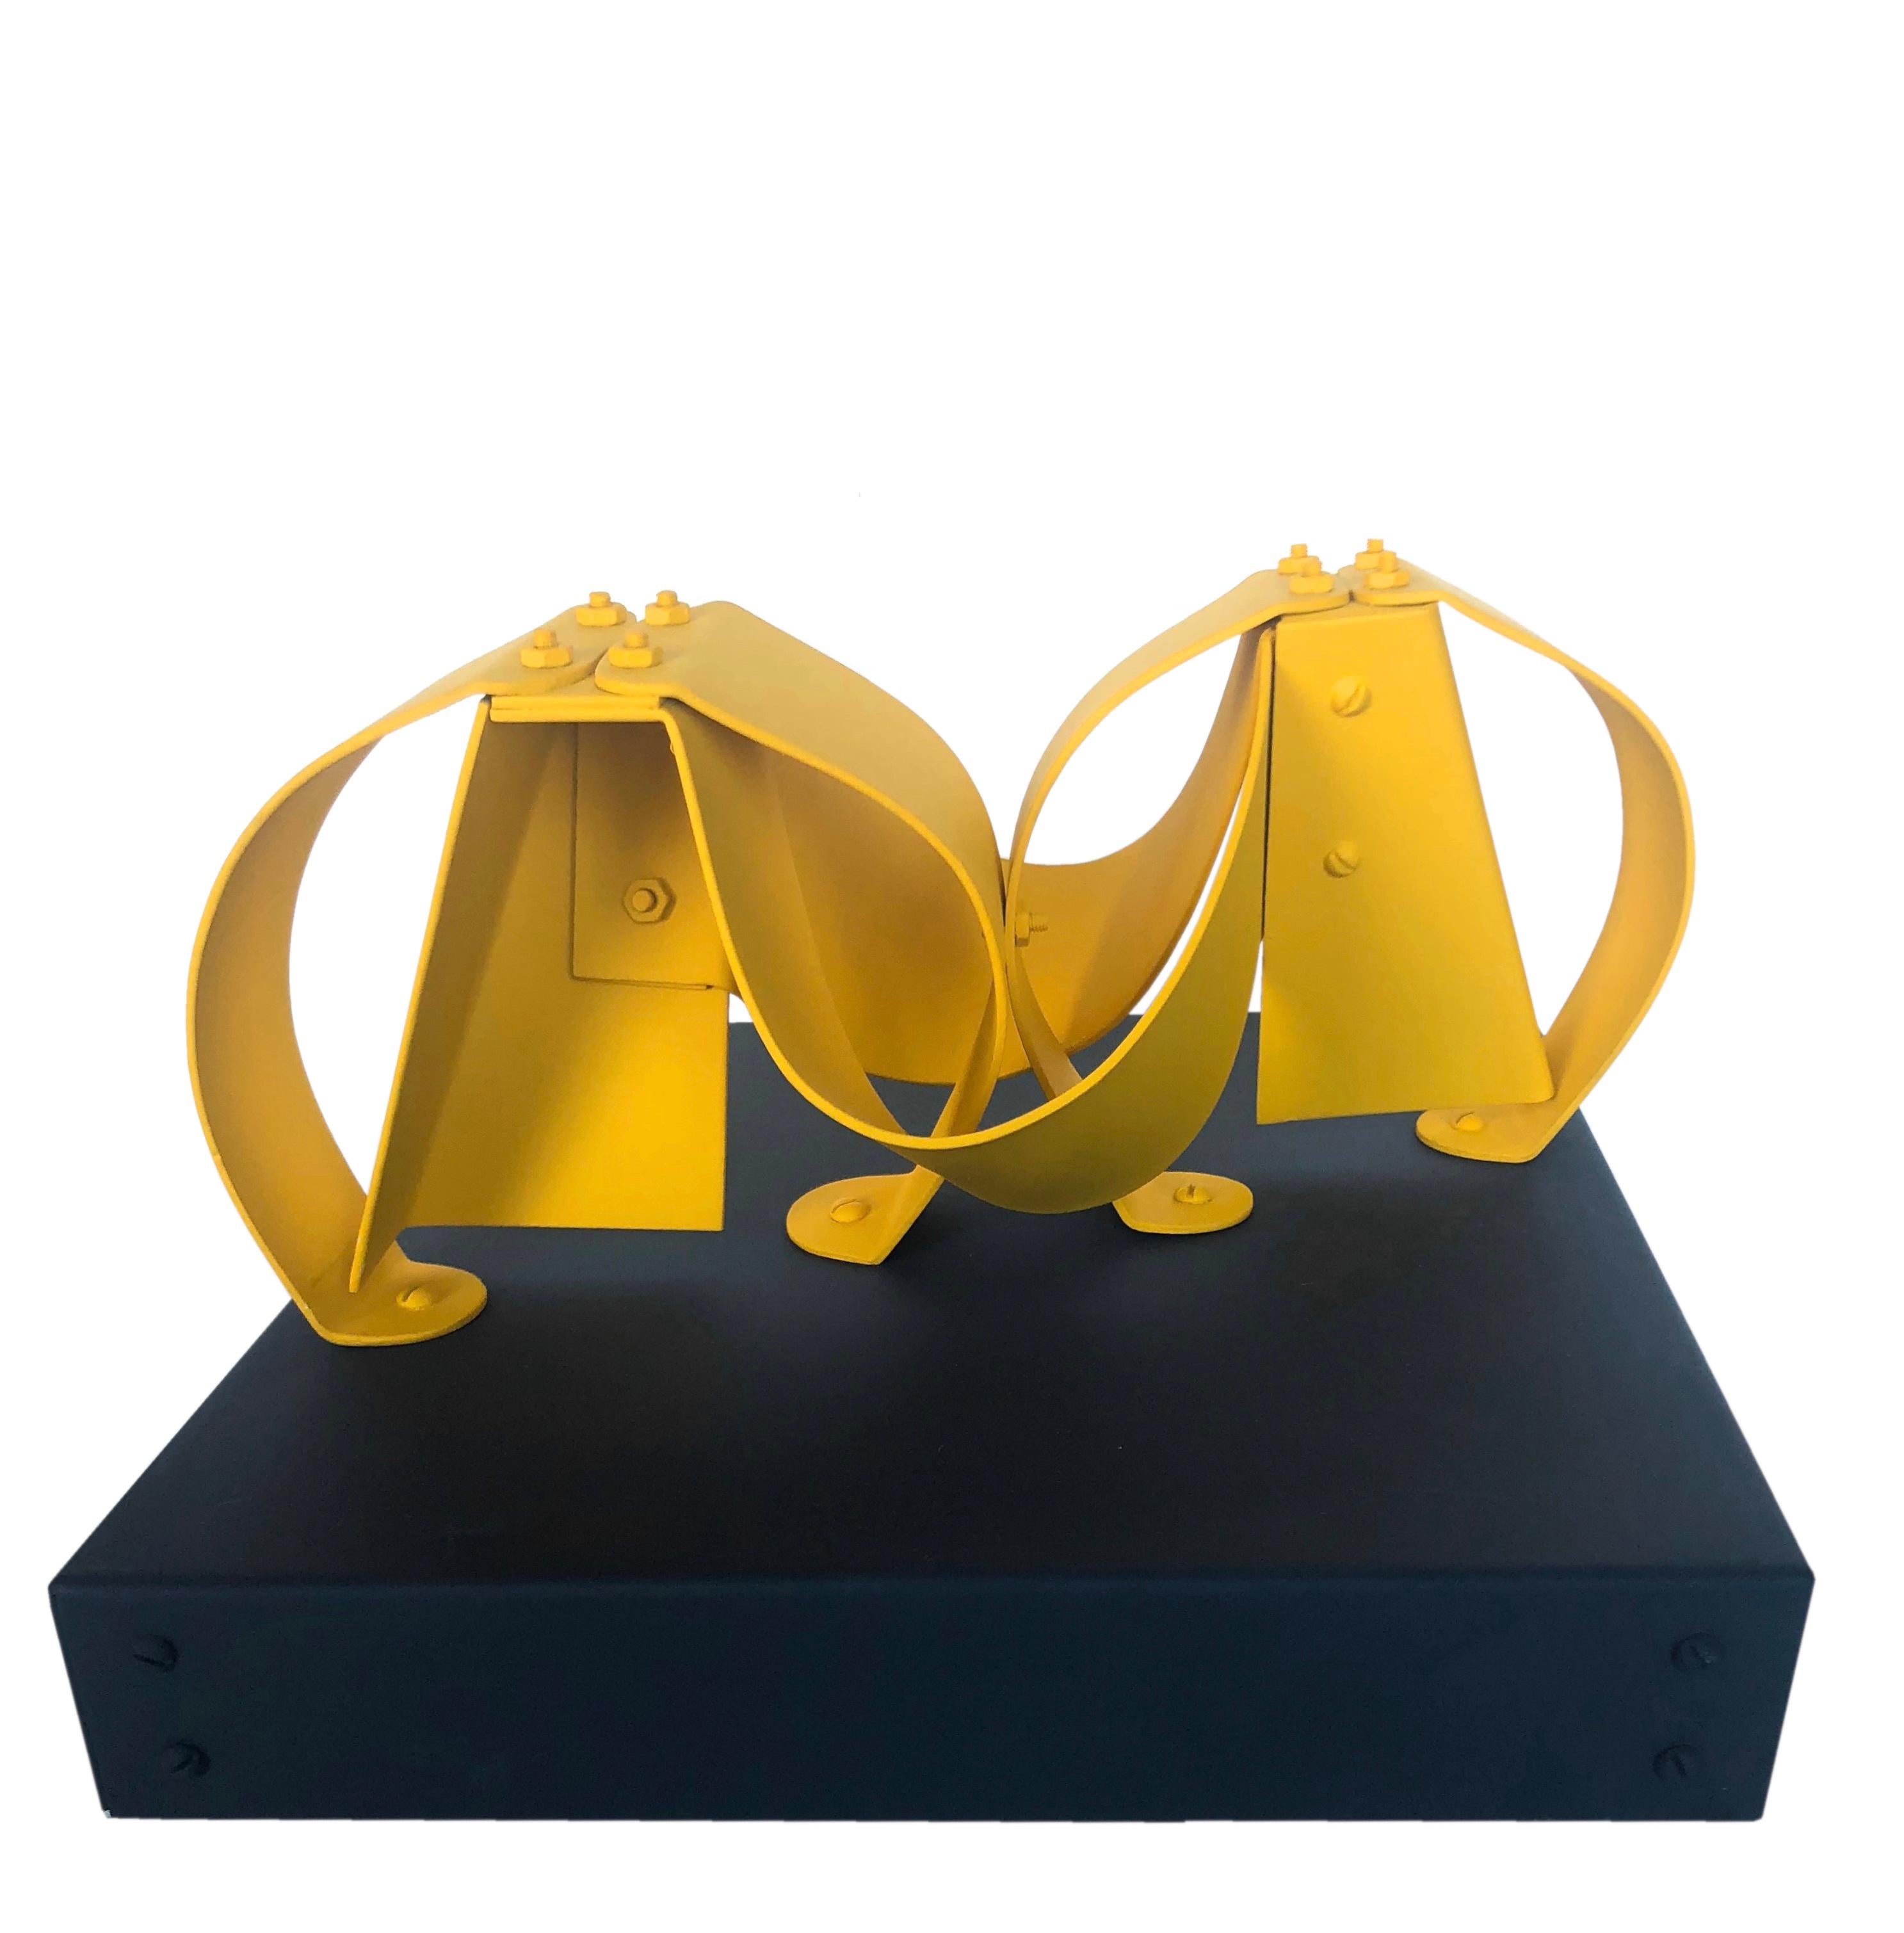 Abstract Sculpture Edgard Negret - Sculpture jaune geminis 